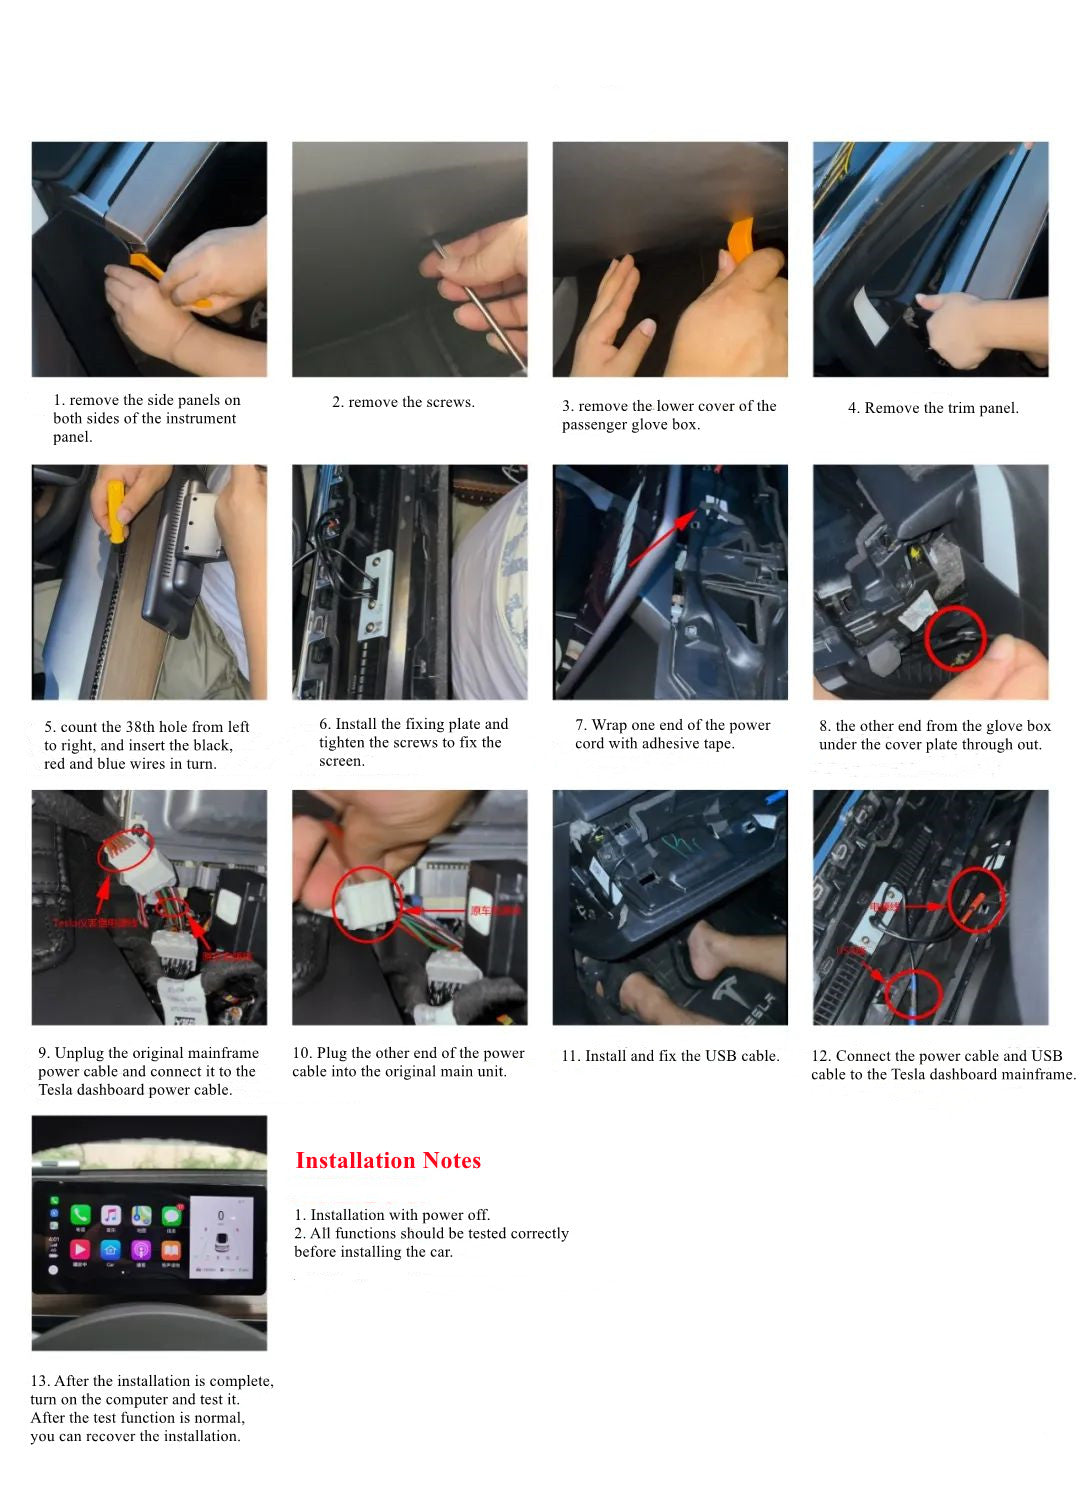 Tesla Model3/Y CarPlay dashboard installation steps